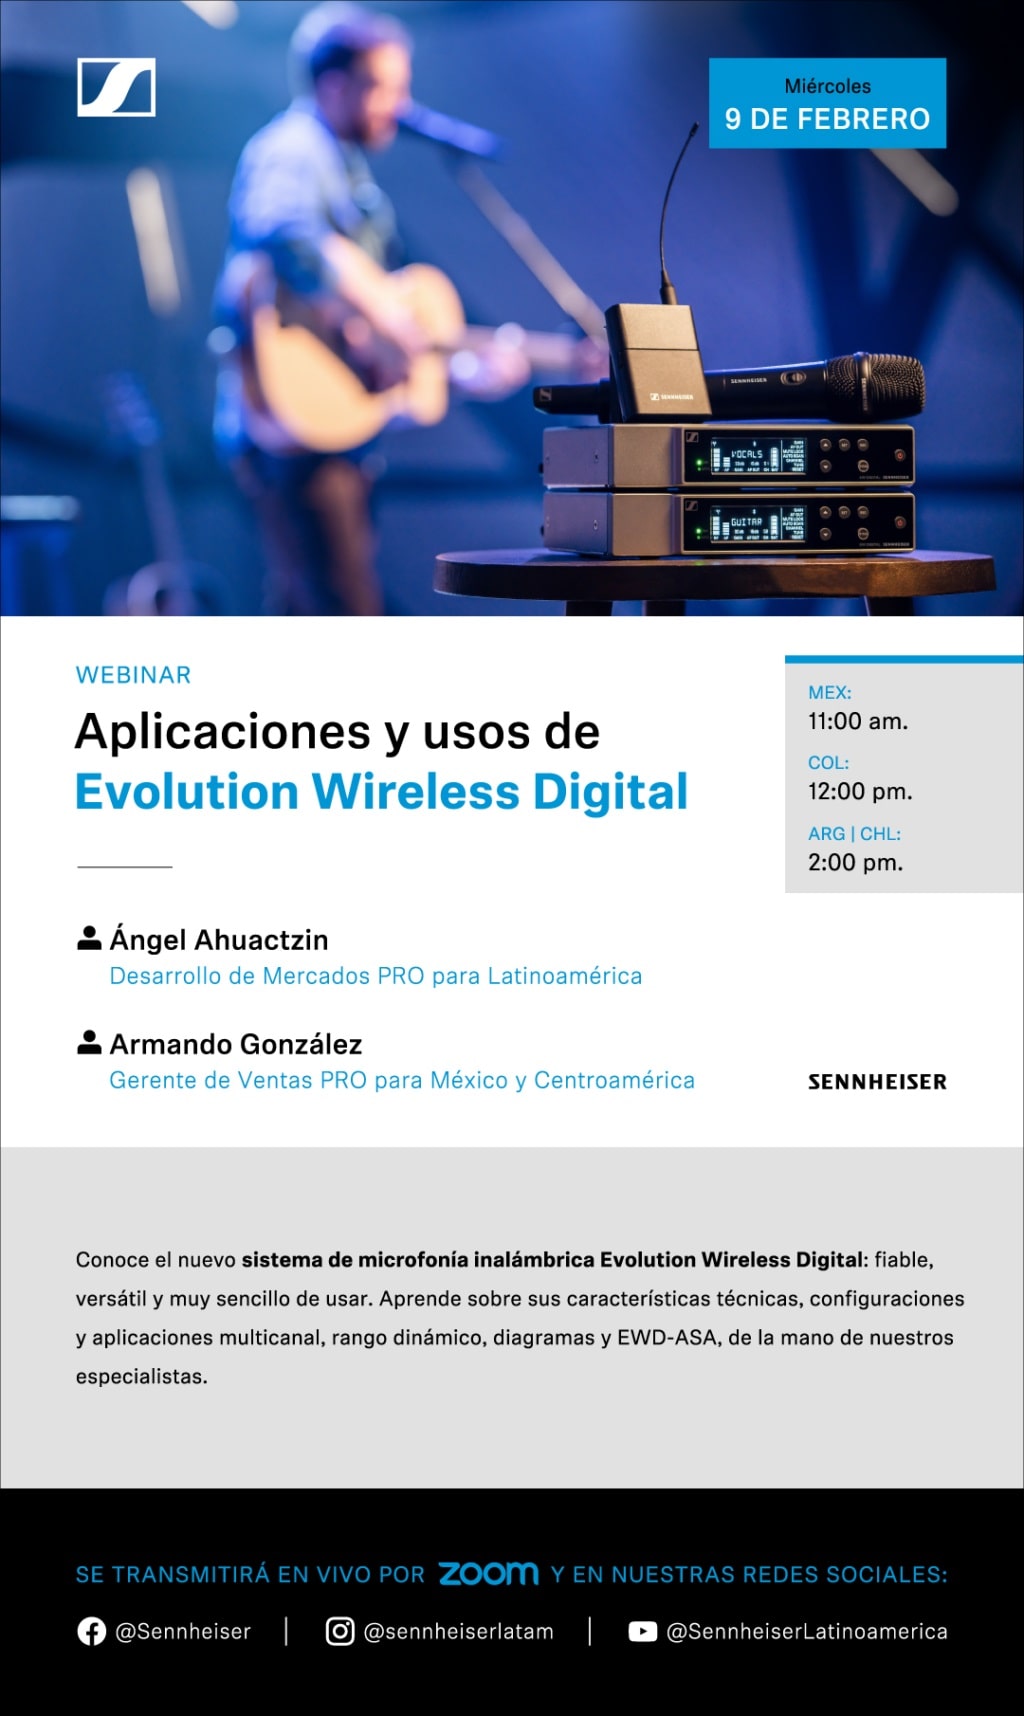 Resuelve todas tus dudas sobre Evolution Wireless Digital